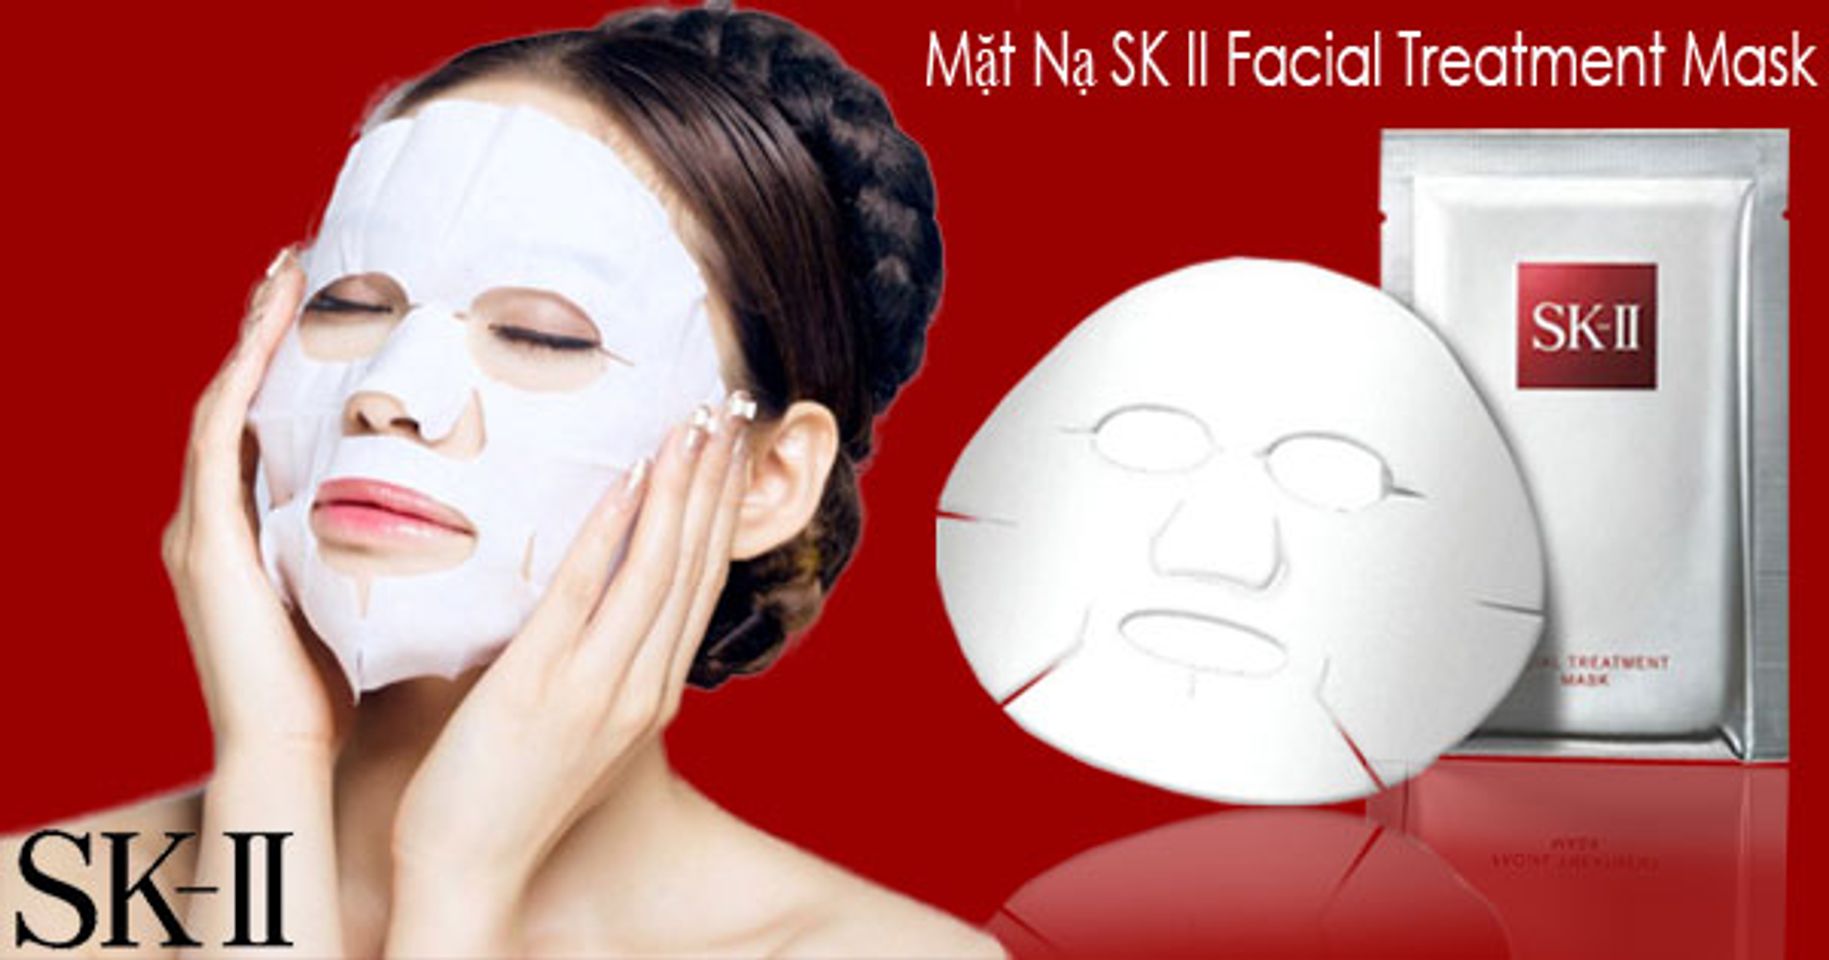 Mặt nạ SK II giúp tăng độ sáng bóng và dưỡng ẩm cho làn da vô cùng hiệu quả